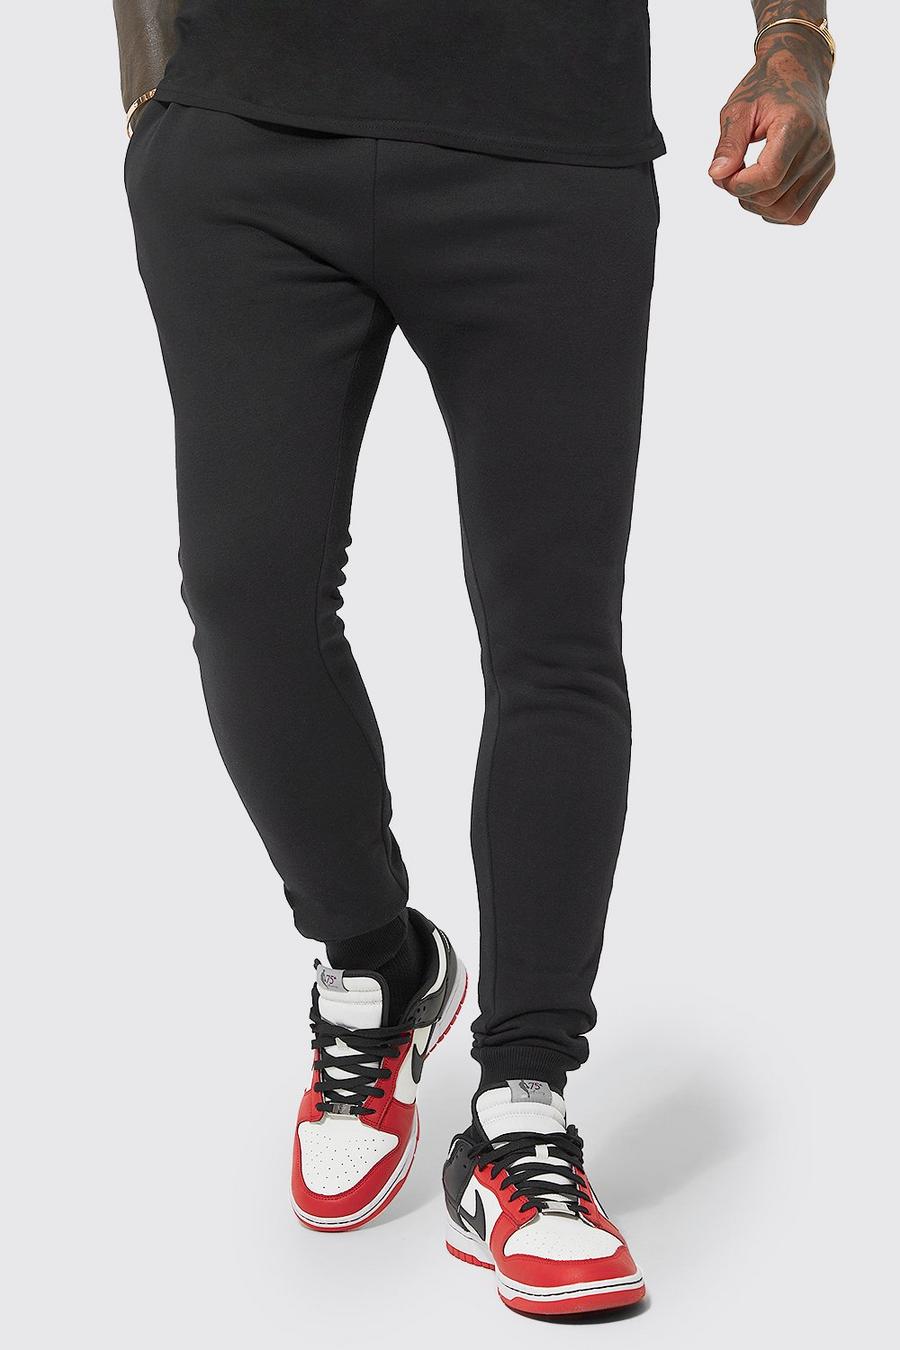 שחור negro מכנסי ריצה סופר סקיני מבד משולב בכותנת REEL